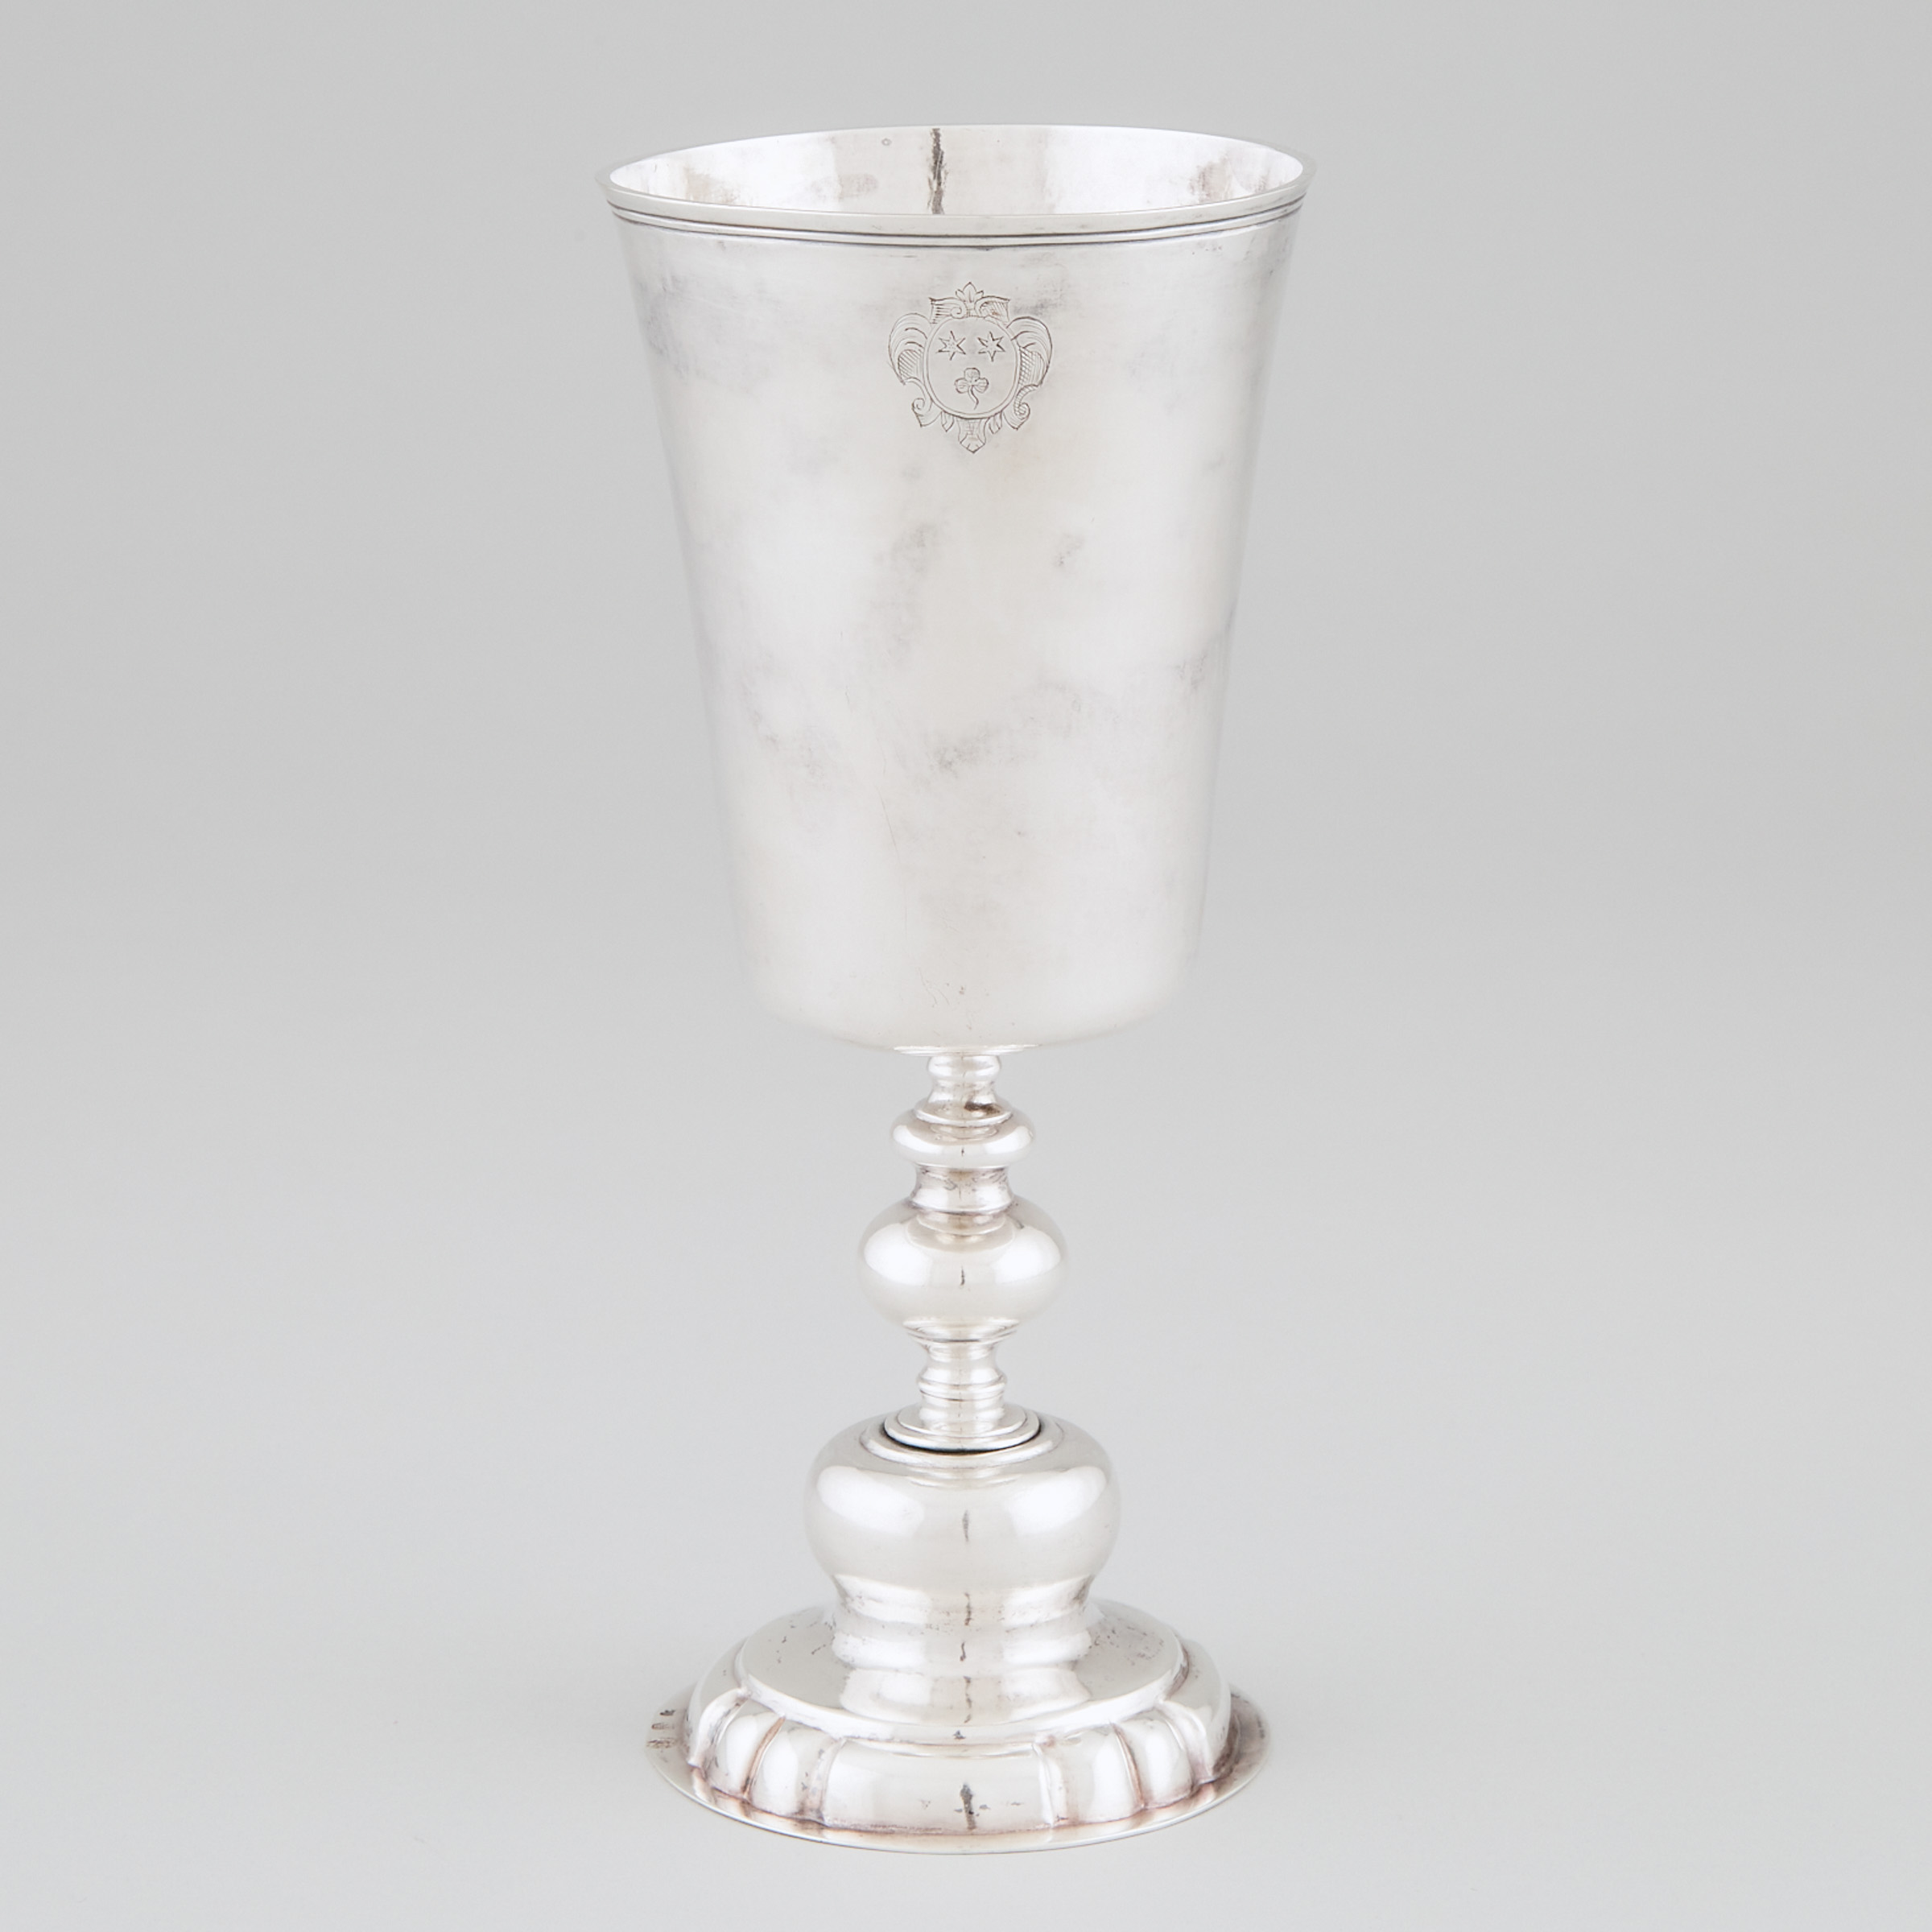 German Silver Goblet, Caspar Melchior